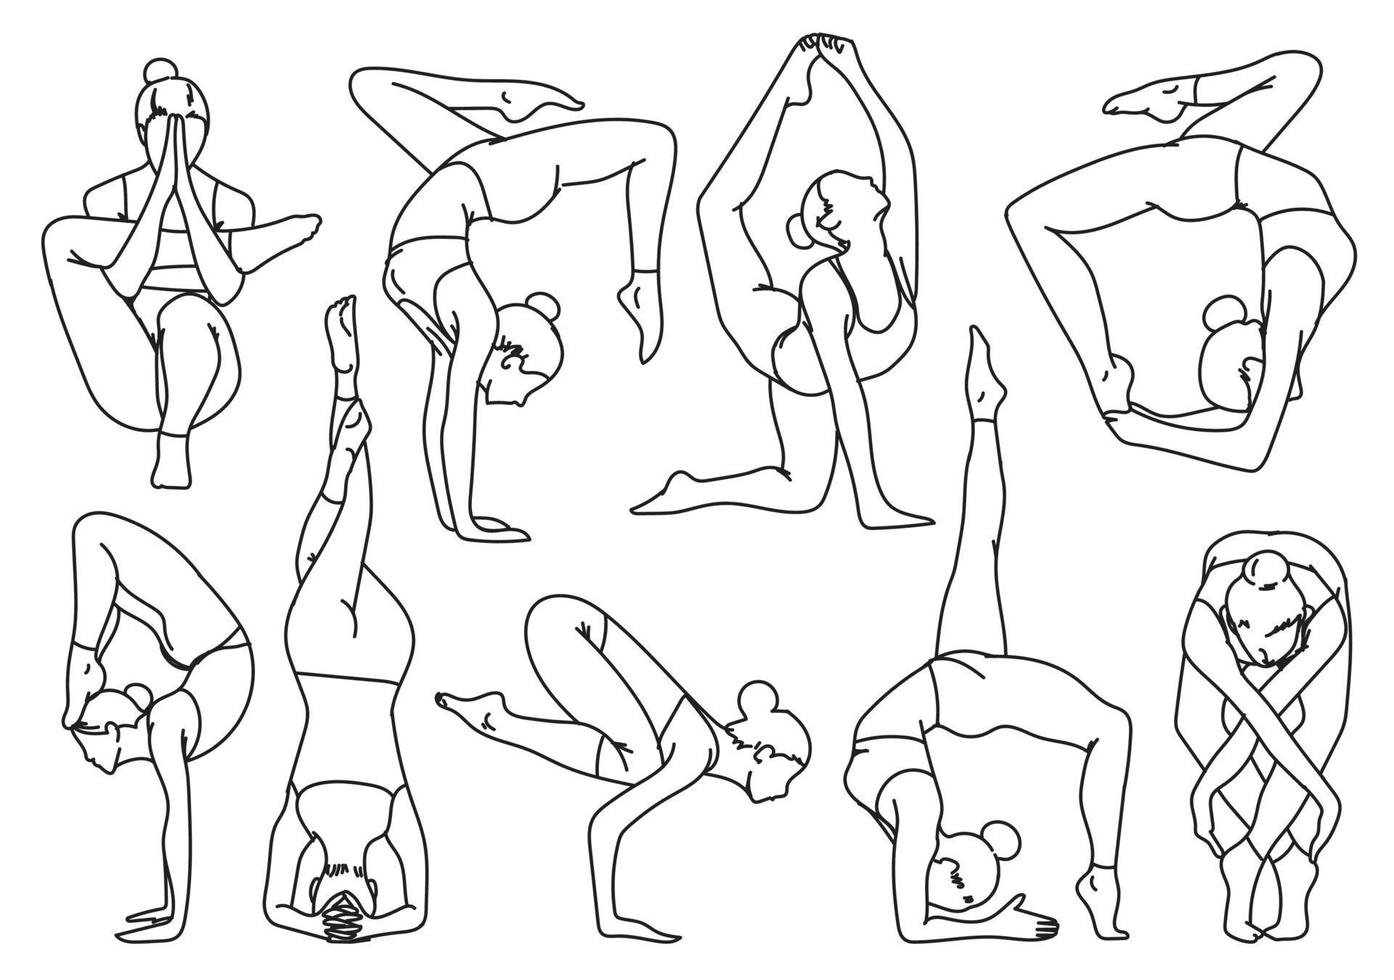 sagome ragazza che pratica yoga esercizi di stretching disegno a mano e schizzo vettore